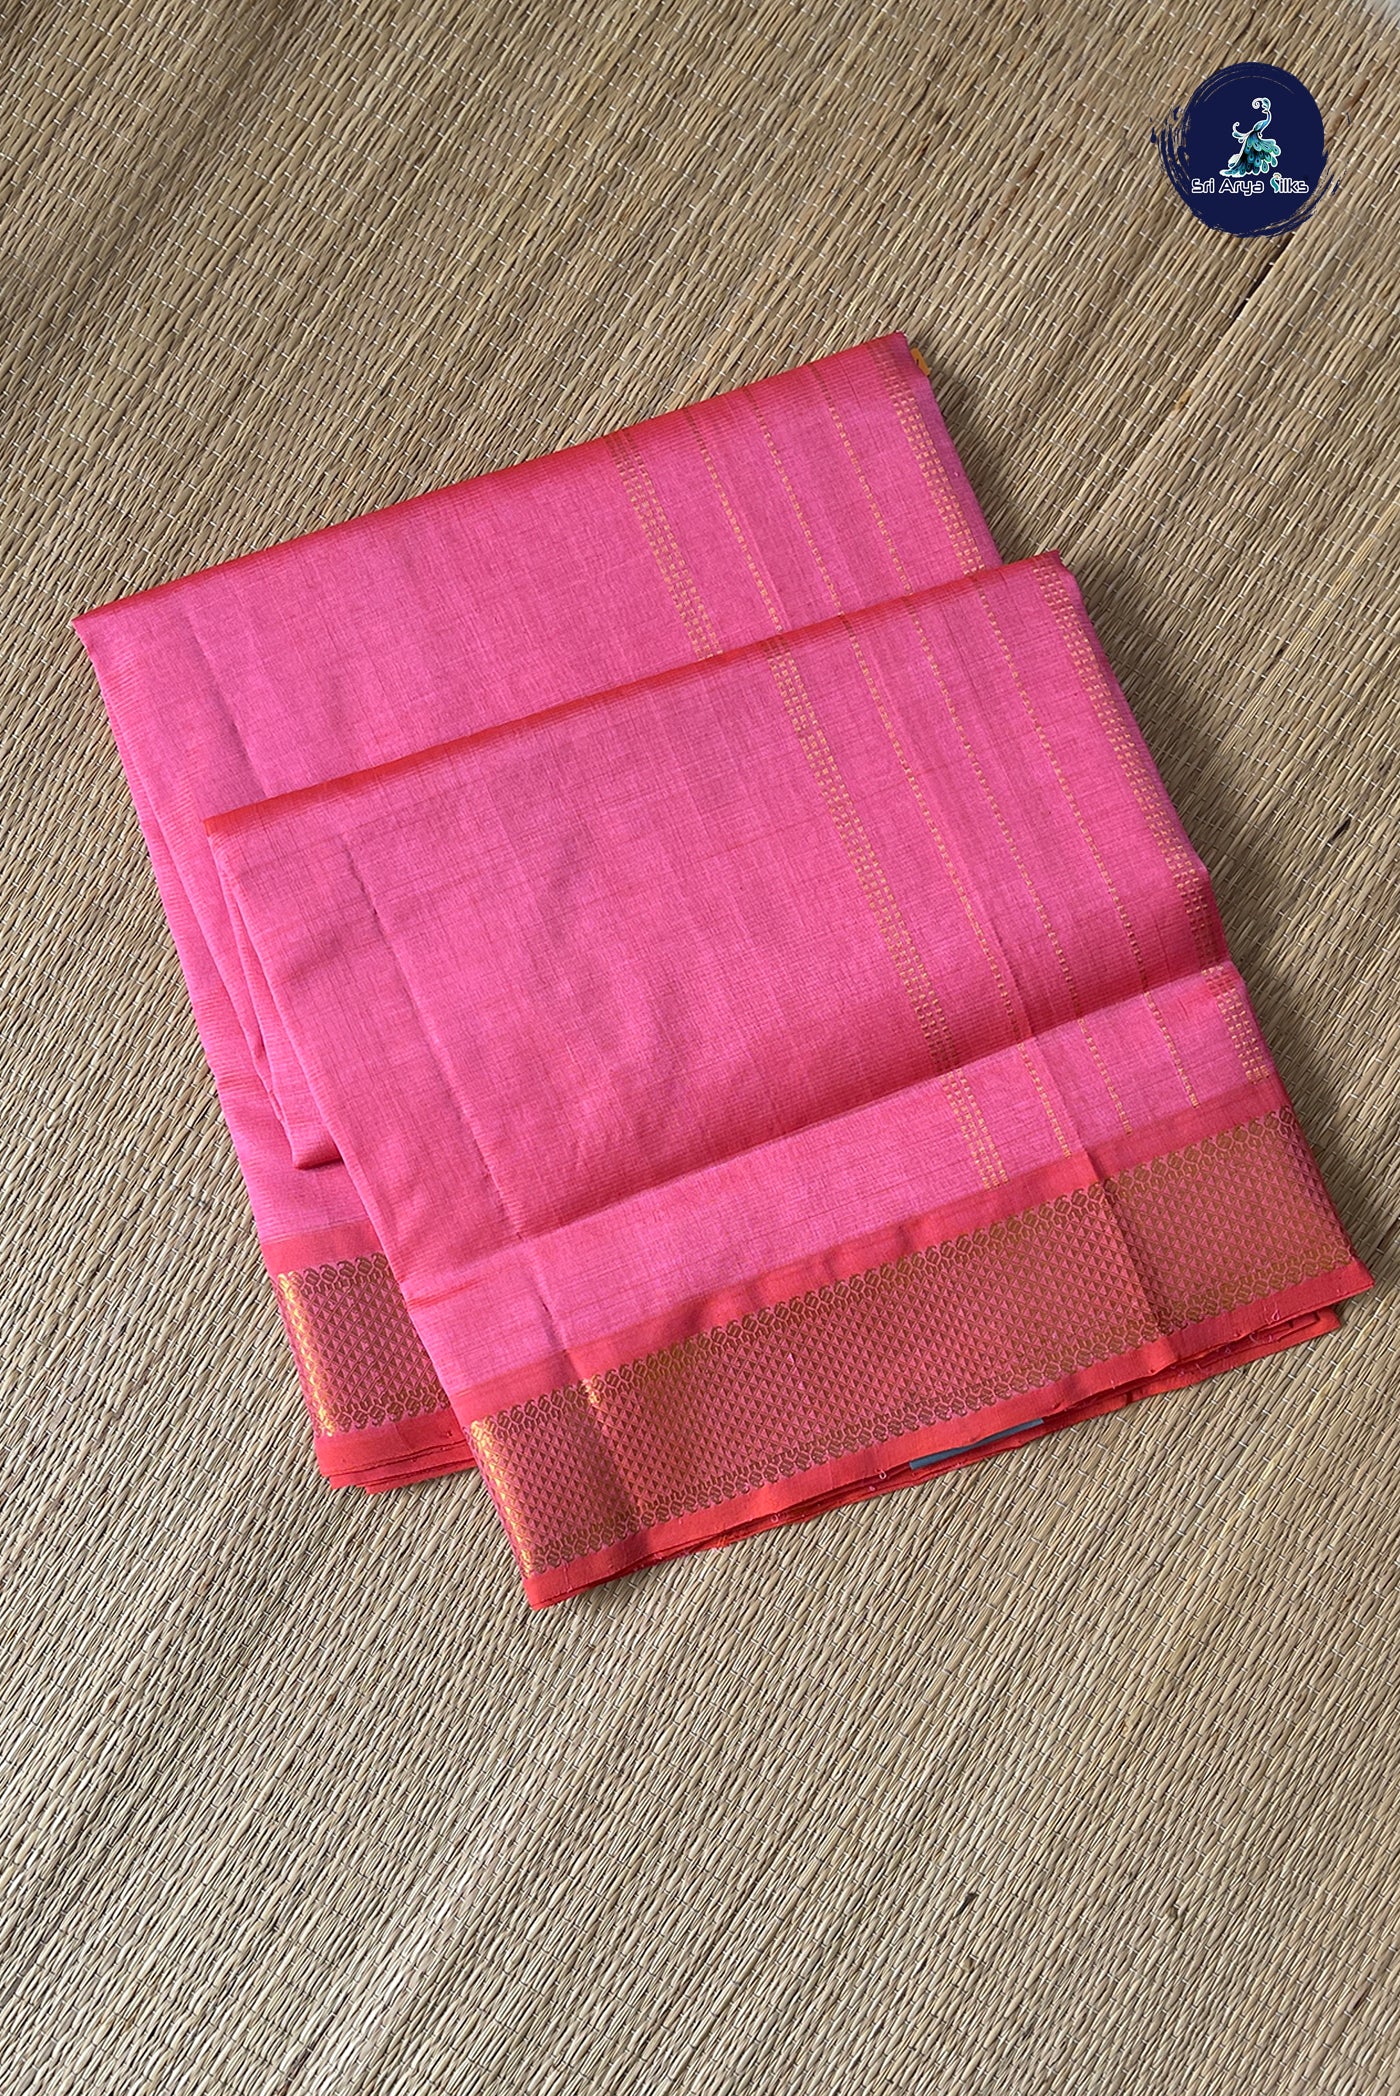 Peach Vaira Oosi Silk Cotton Saree With Vaira Oosi Pattern